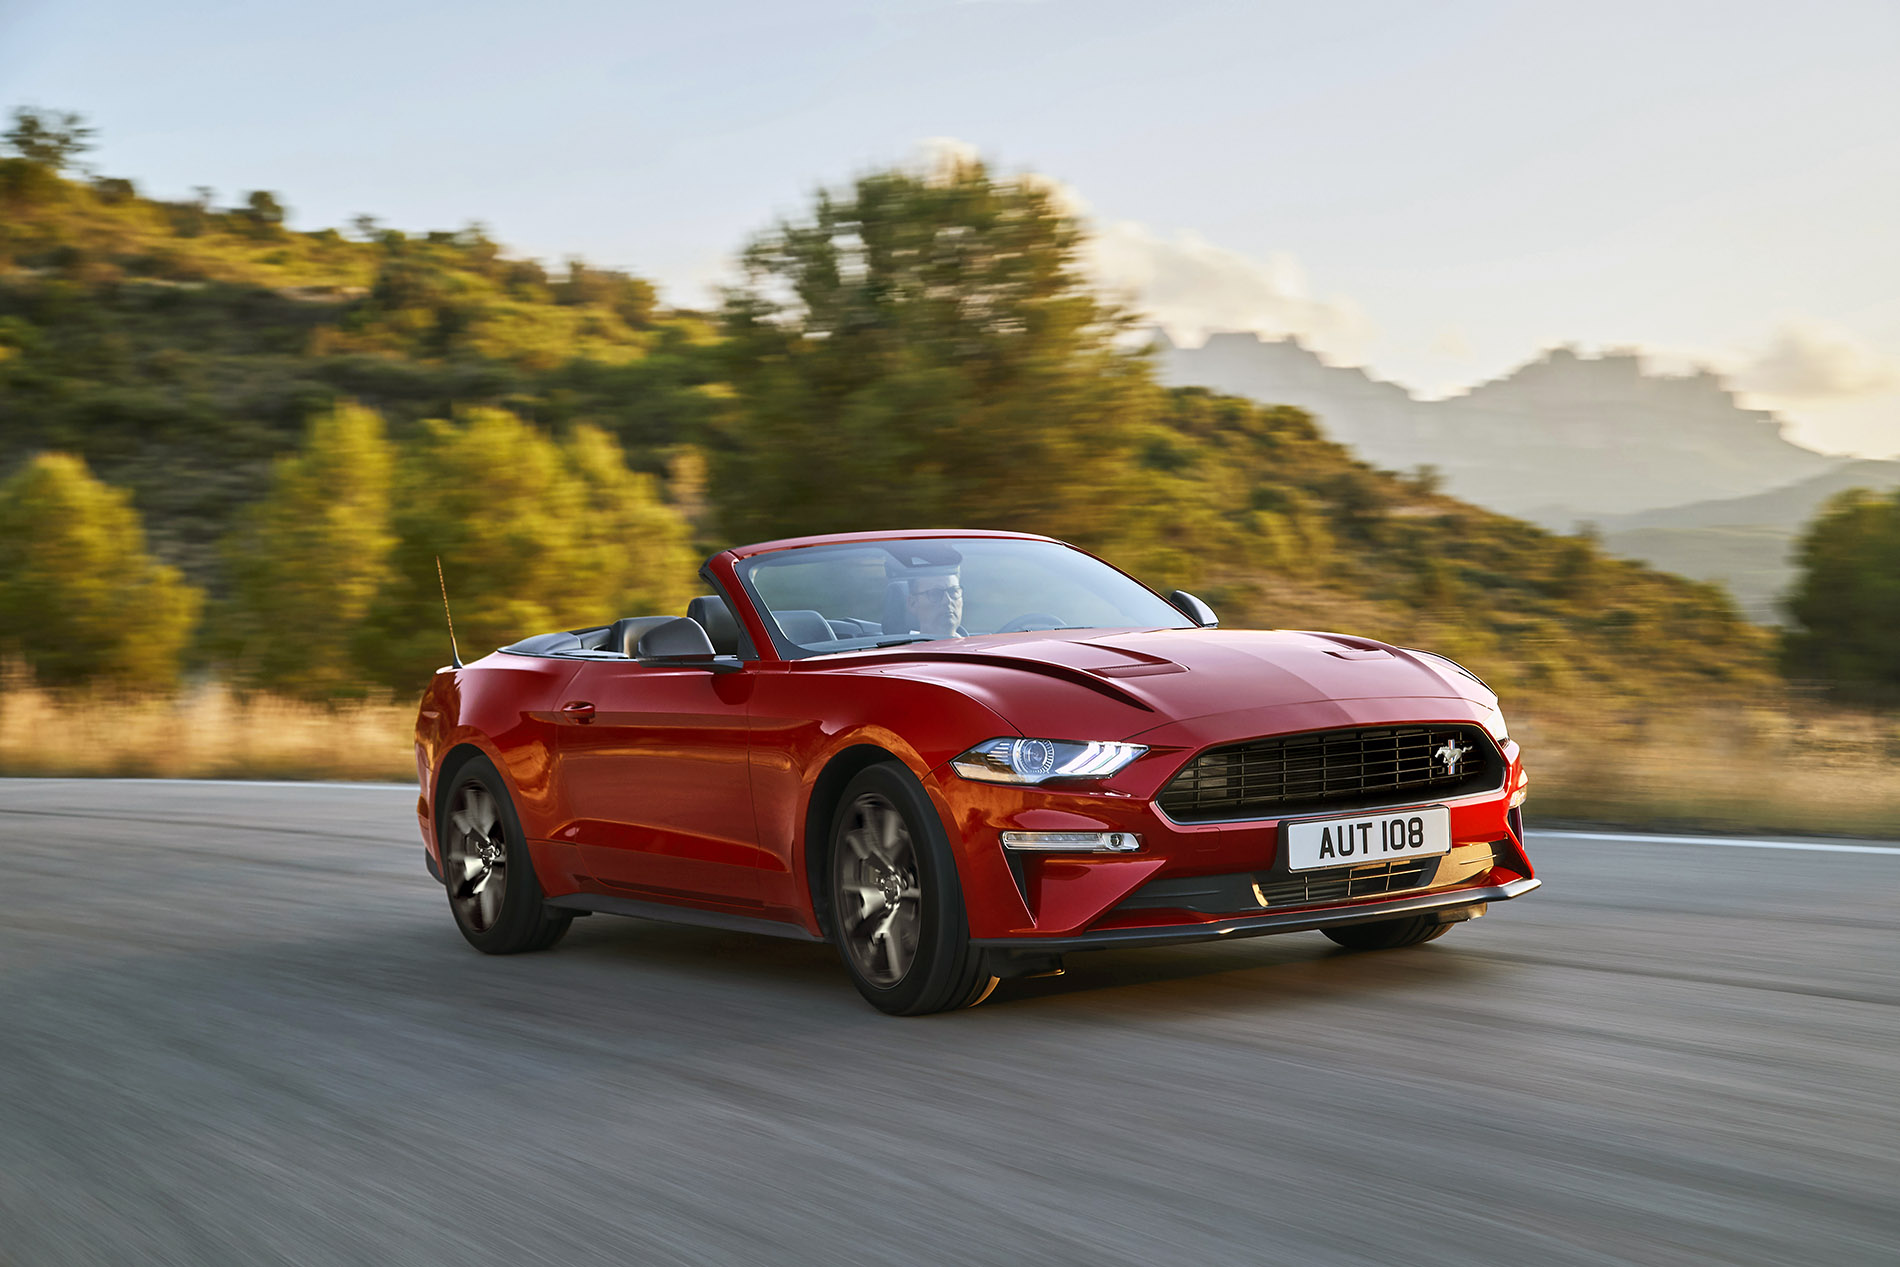 Edycja specjalna Mustanga55 - 5.0 litra V8 i ulepszonego z 2,3-litrowym silnikiem EcoBoost